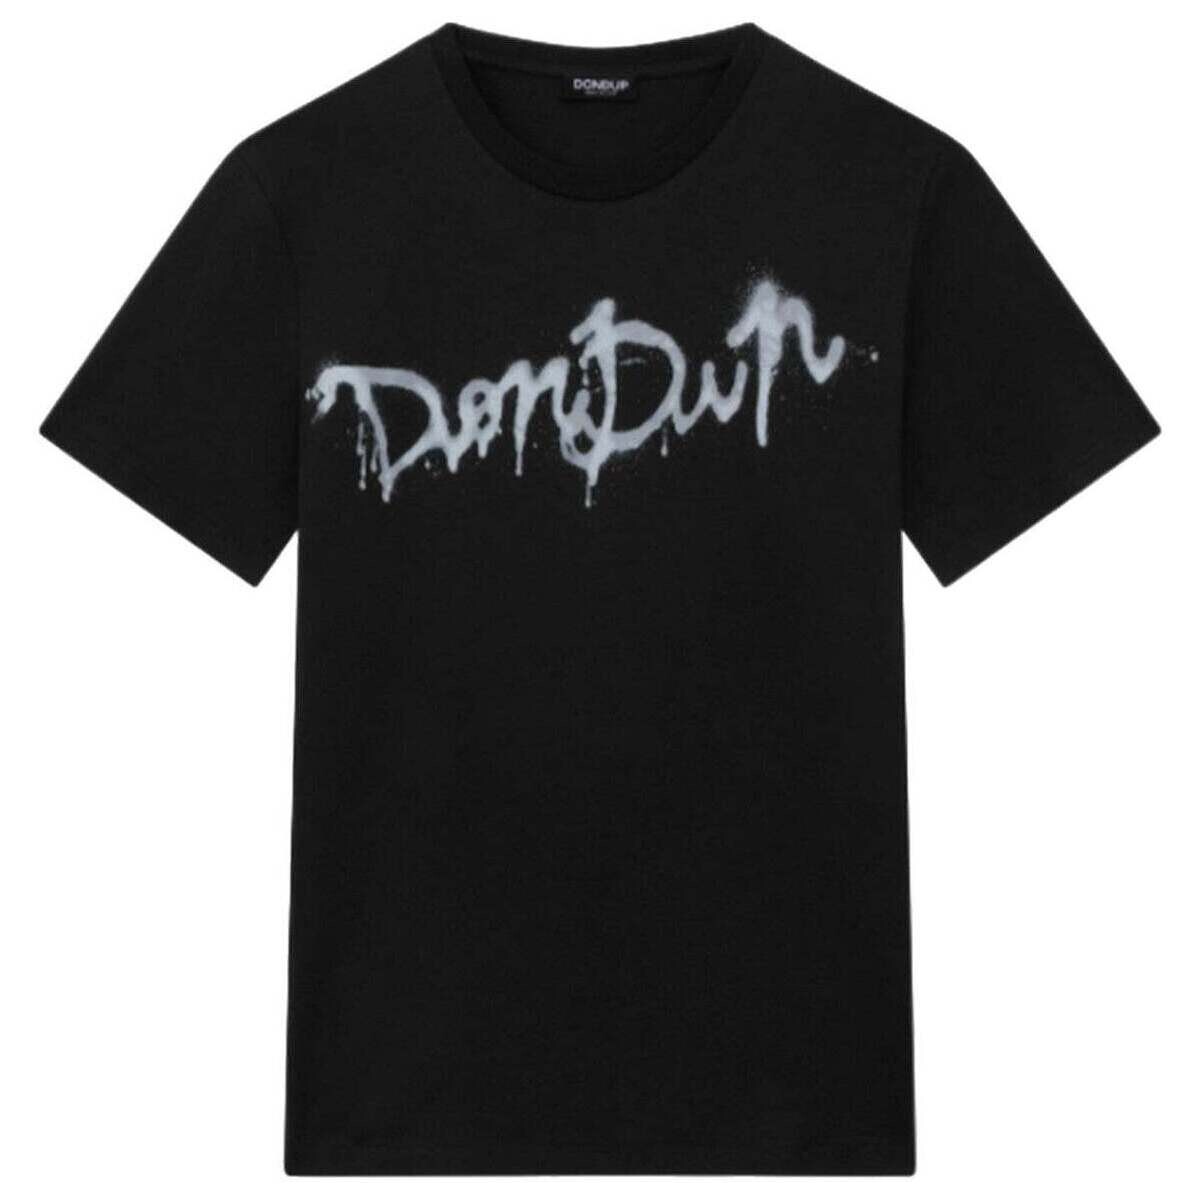 Vêtements Homme T-shirts manches courtes Dondup  Noir